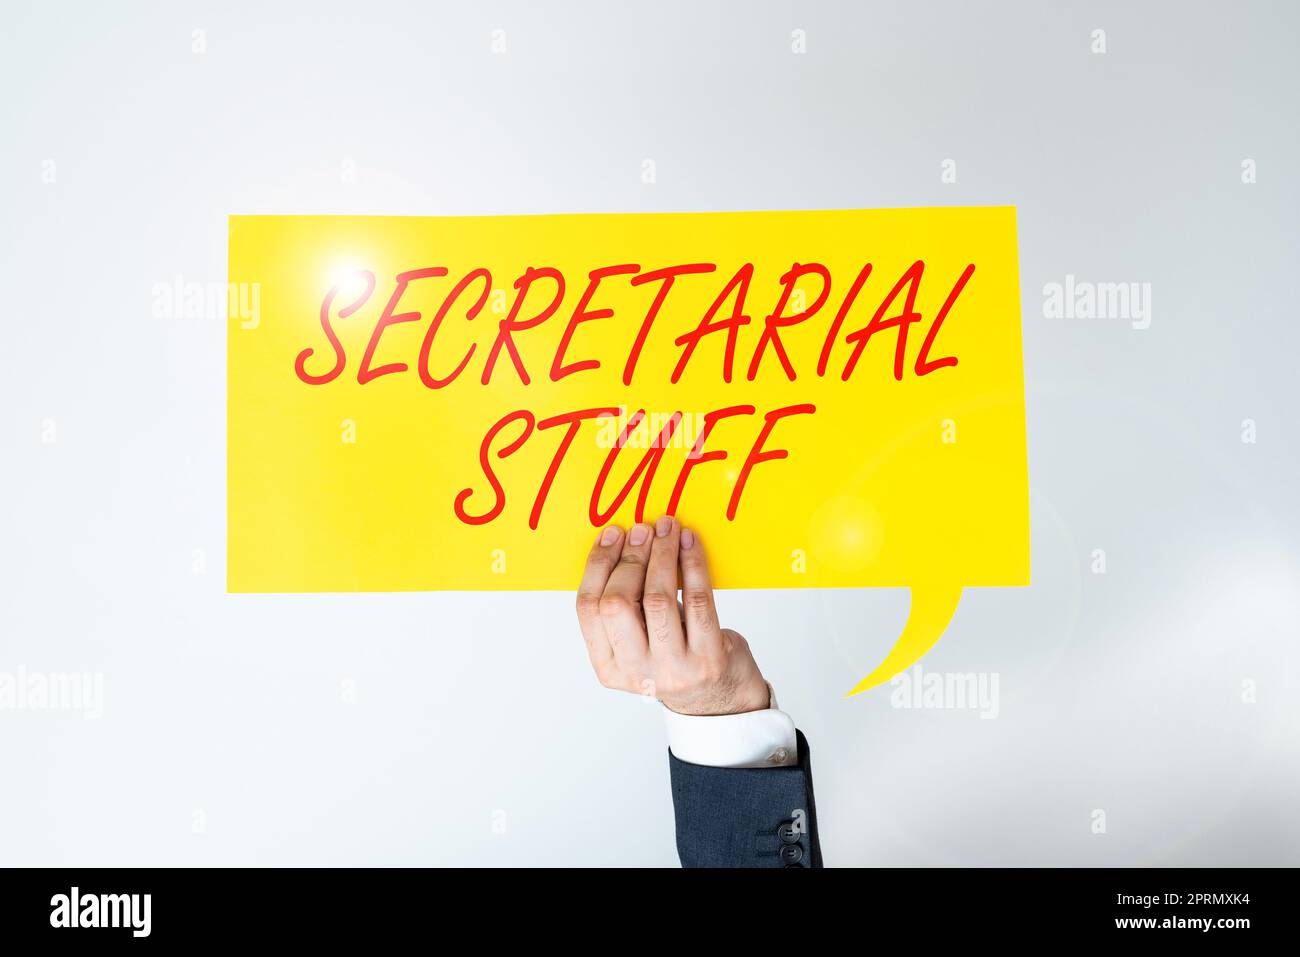 Handgeschriebenes Schild Secretary StuffSecretary hat Sachen, die einem persönlichen Assistenten gehören. Begriff bedeutet, dass Sekretär Dinge besitzt, die einem persönlichen Assistenten gehören Stockfoto